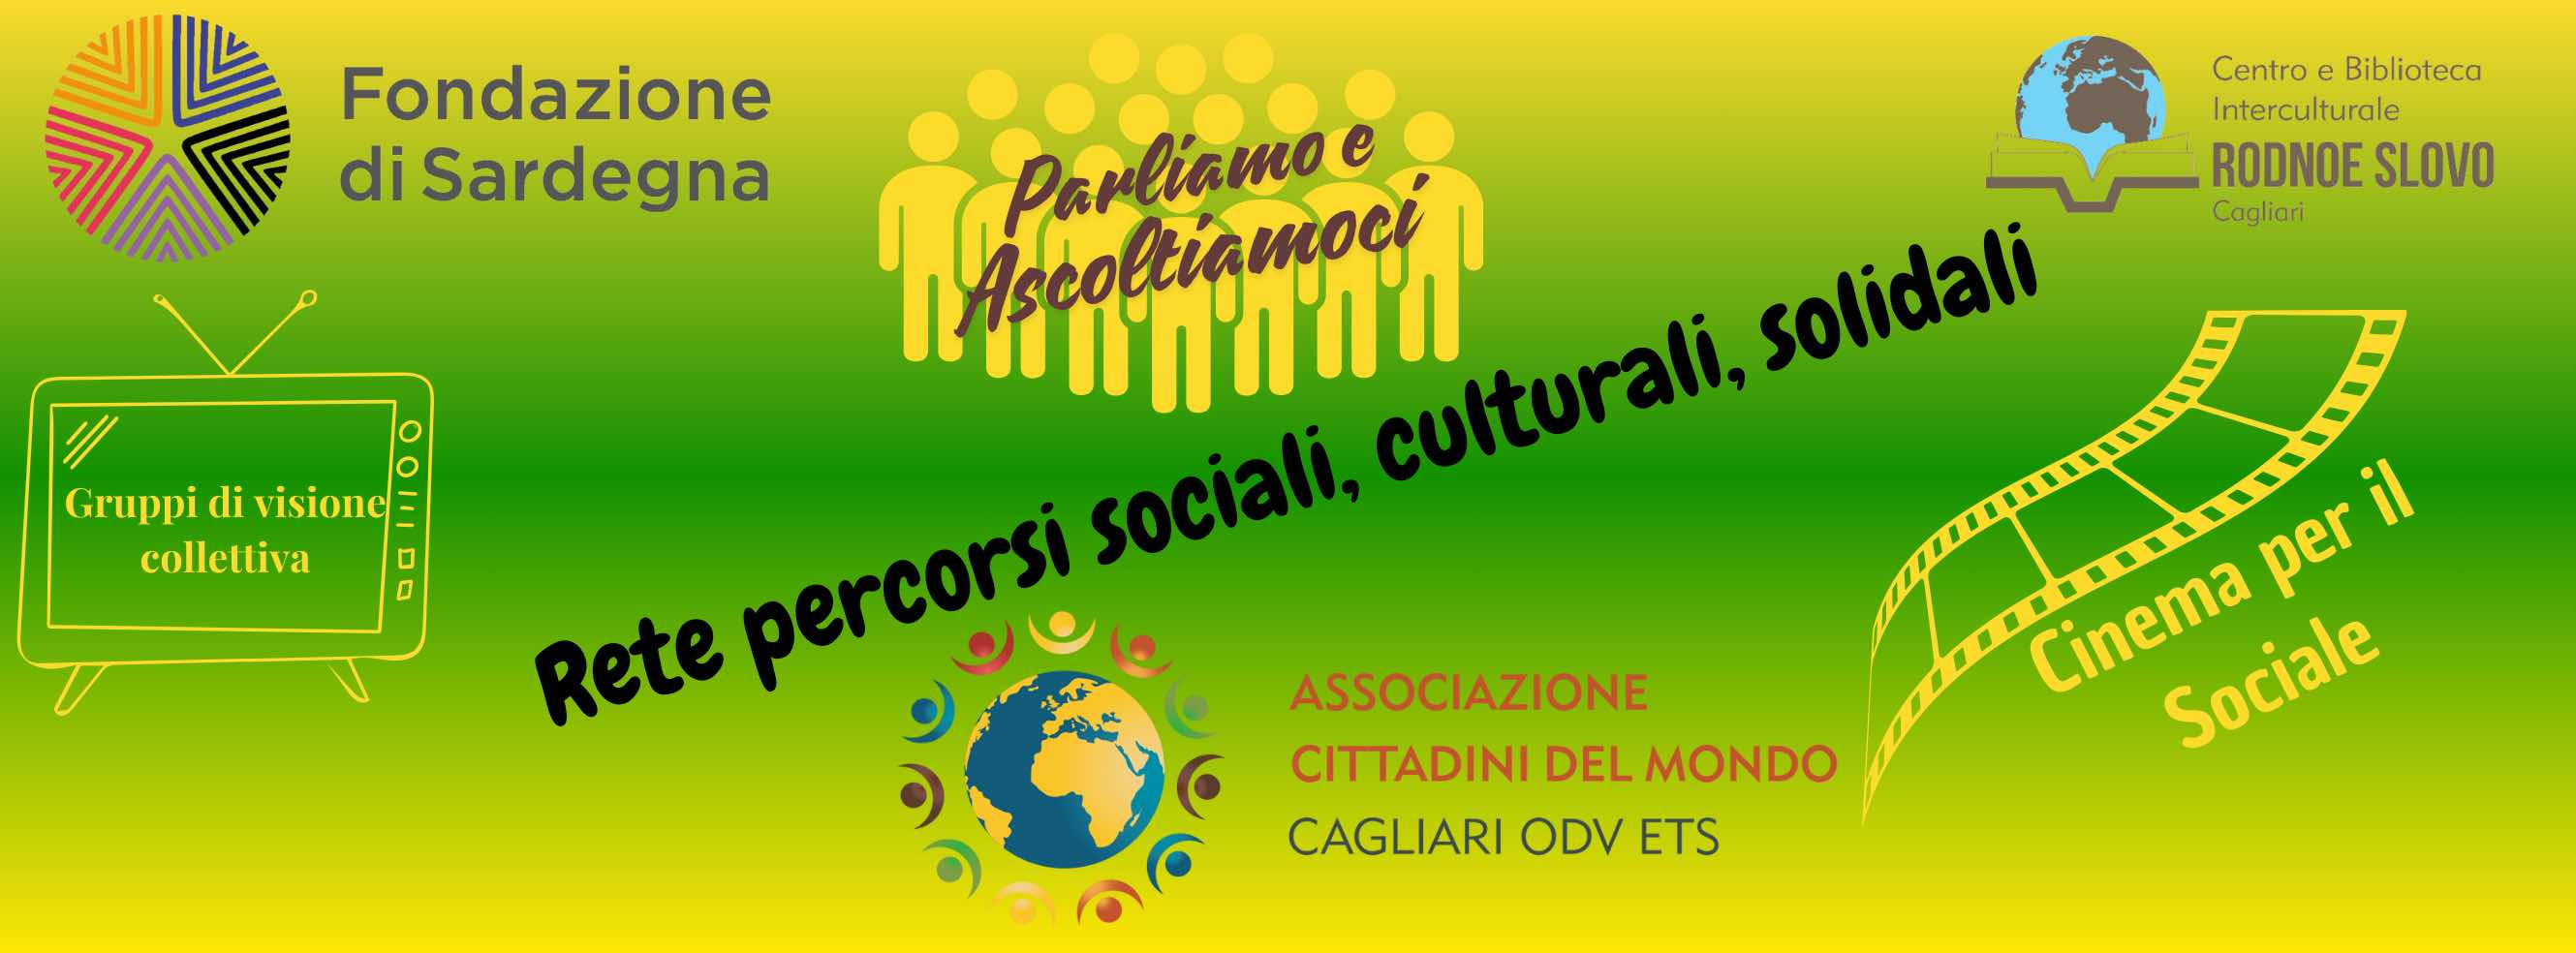 La Biblioteca “Rodnoe Slovo” di Cagliari, ha ospitato lo scorso 5 maggio la presentazione pubblica dell’iniziativa “Rete percorsi sociali, culturali, solidali, di Cittadini del Mondo ODV